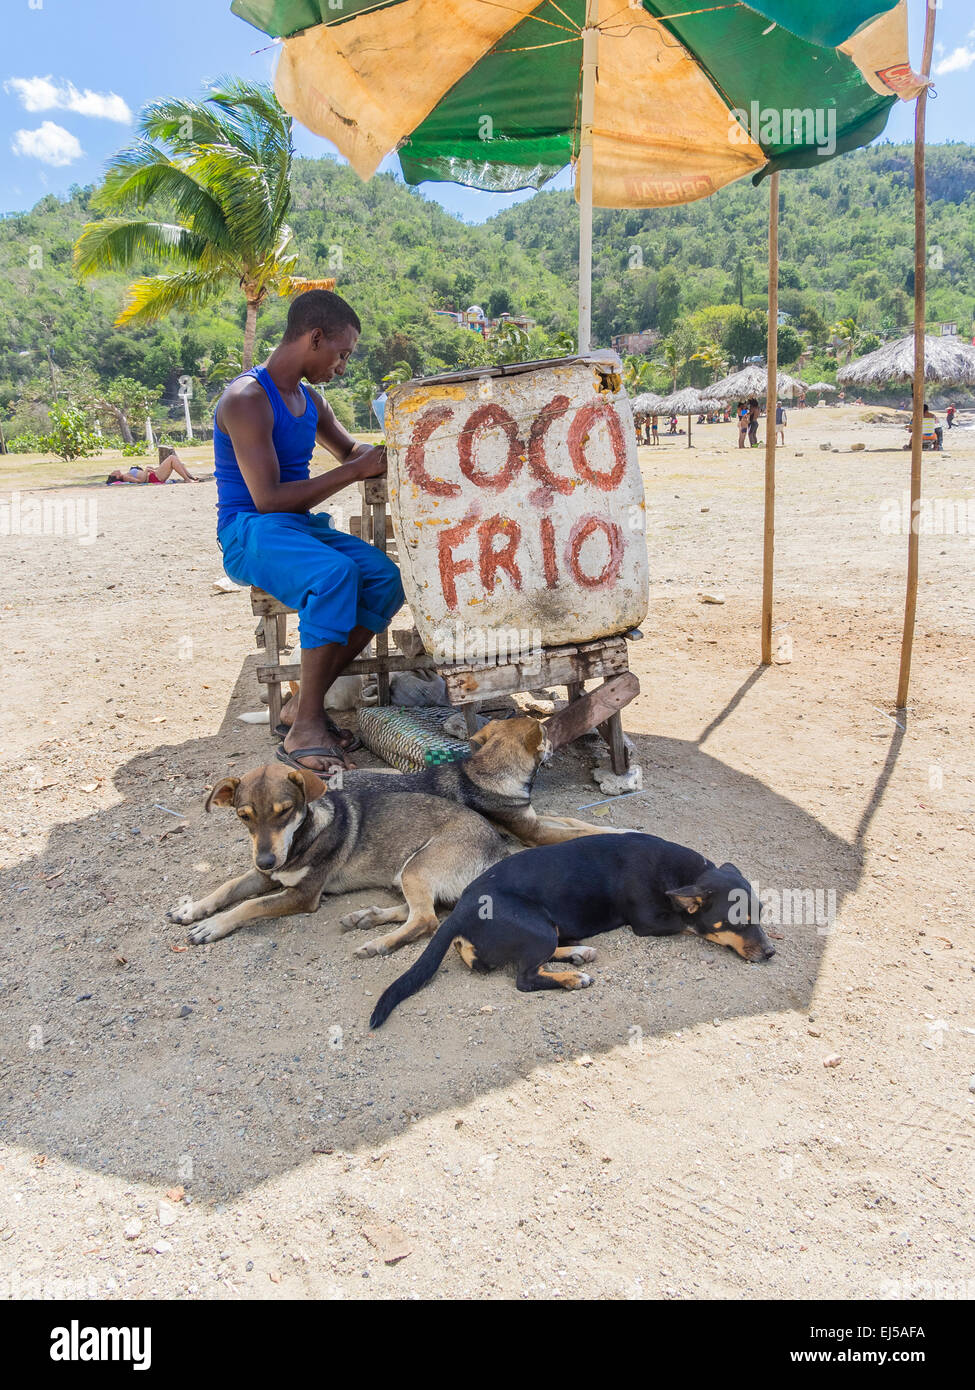 Un giovane maschio afro-cubane uomo si siede presso il suo stand sulla spiaggia di Siboney, Cuba la vendita di "Coco Frio' freddo fresco noci di cocco. Foto Stock